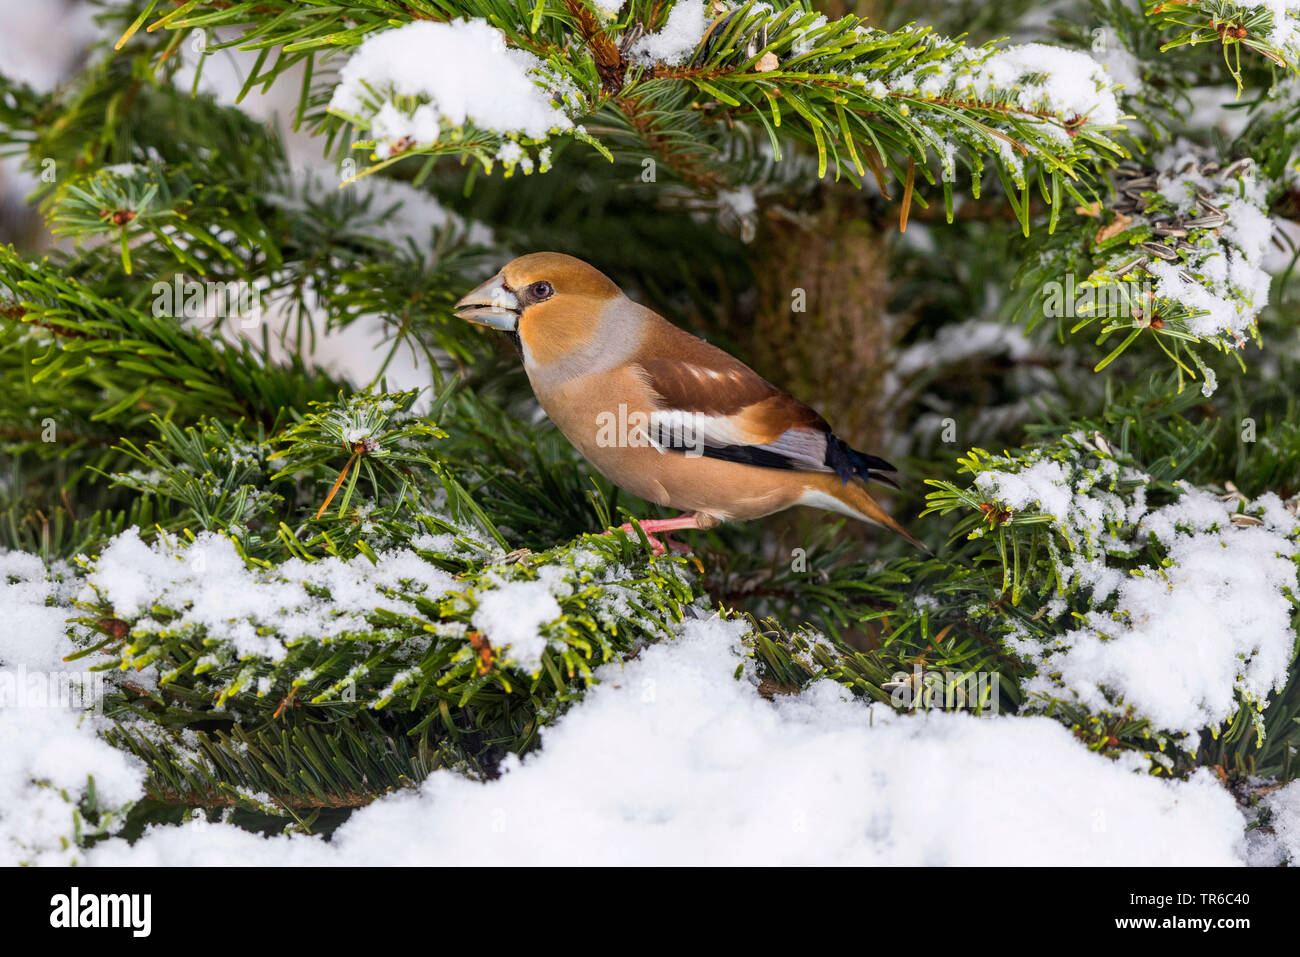 (Coccothraustes coccothraustes hawfinch), homme assis sur une branche de sapin recouvert de neige, vue de côté, l'Allemagne, la Bavière Banque D'Images